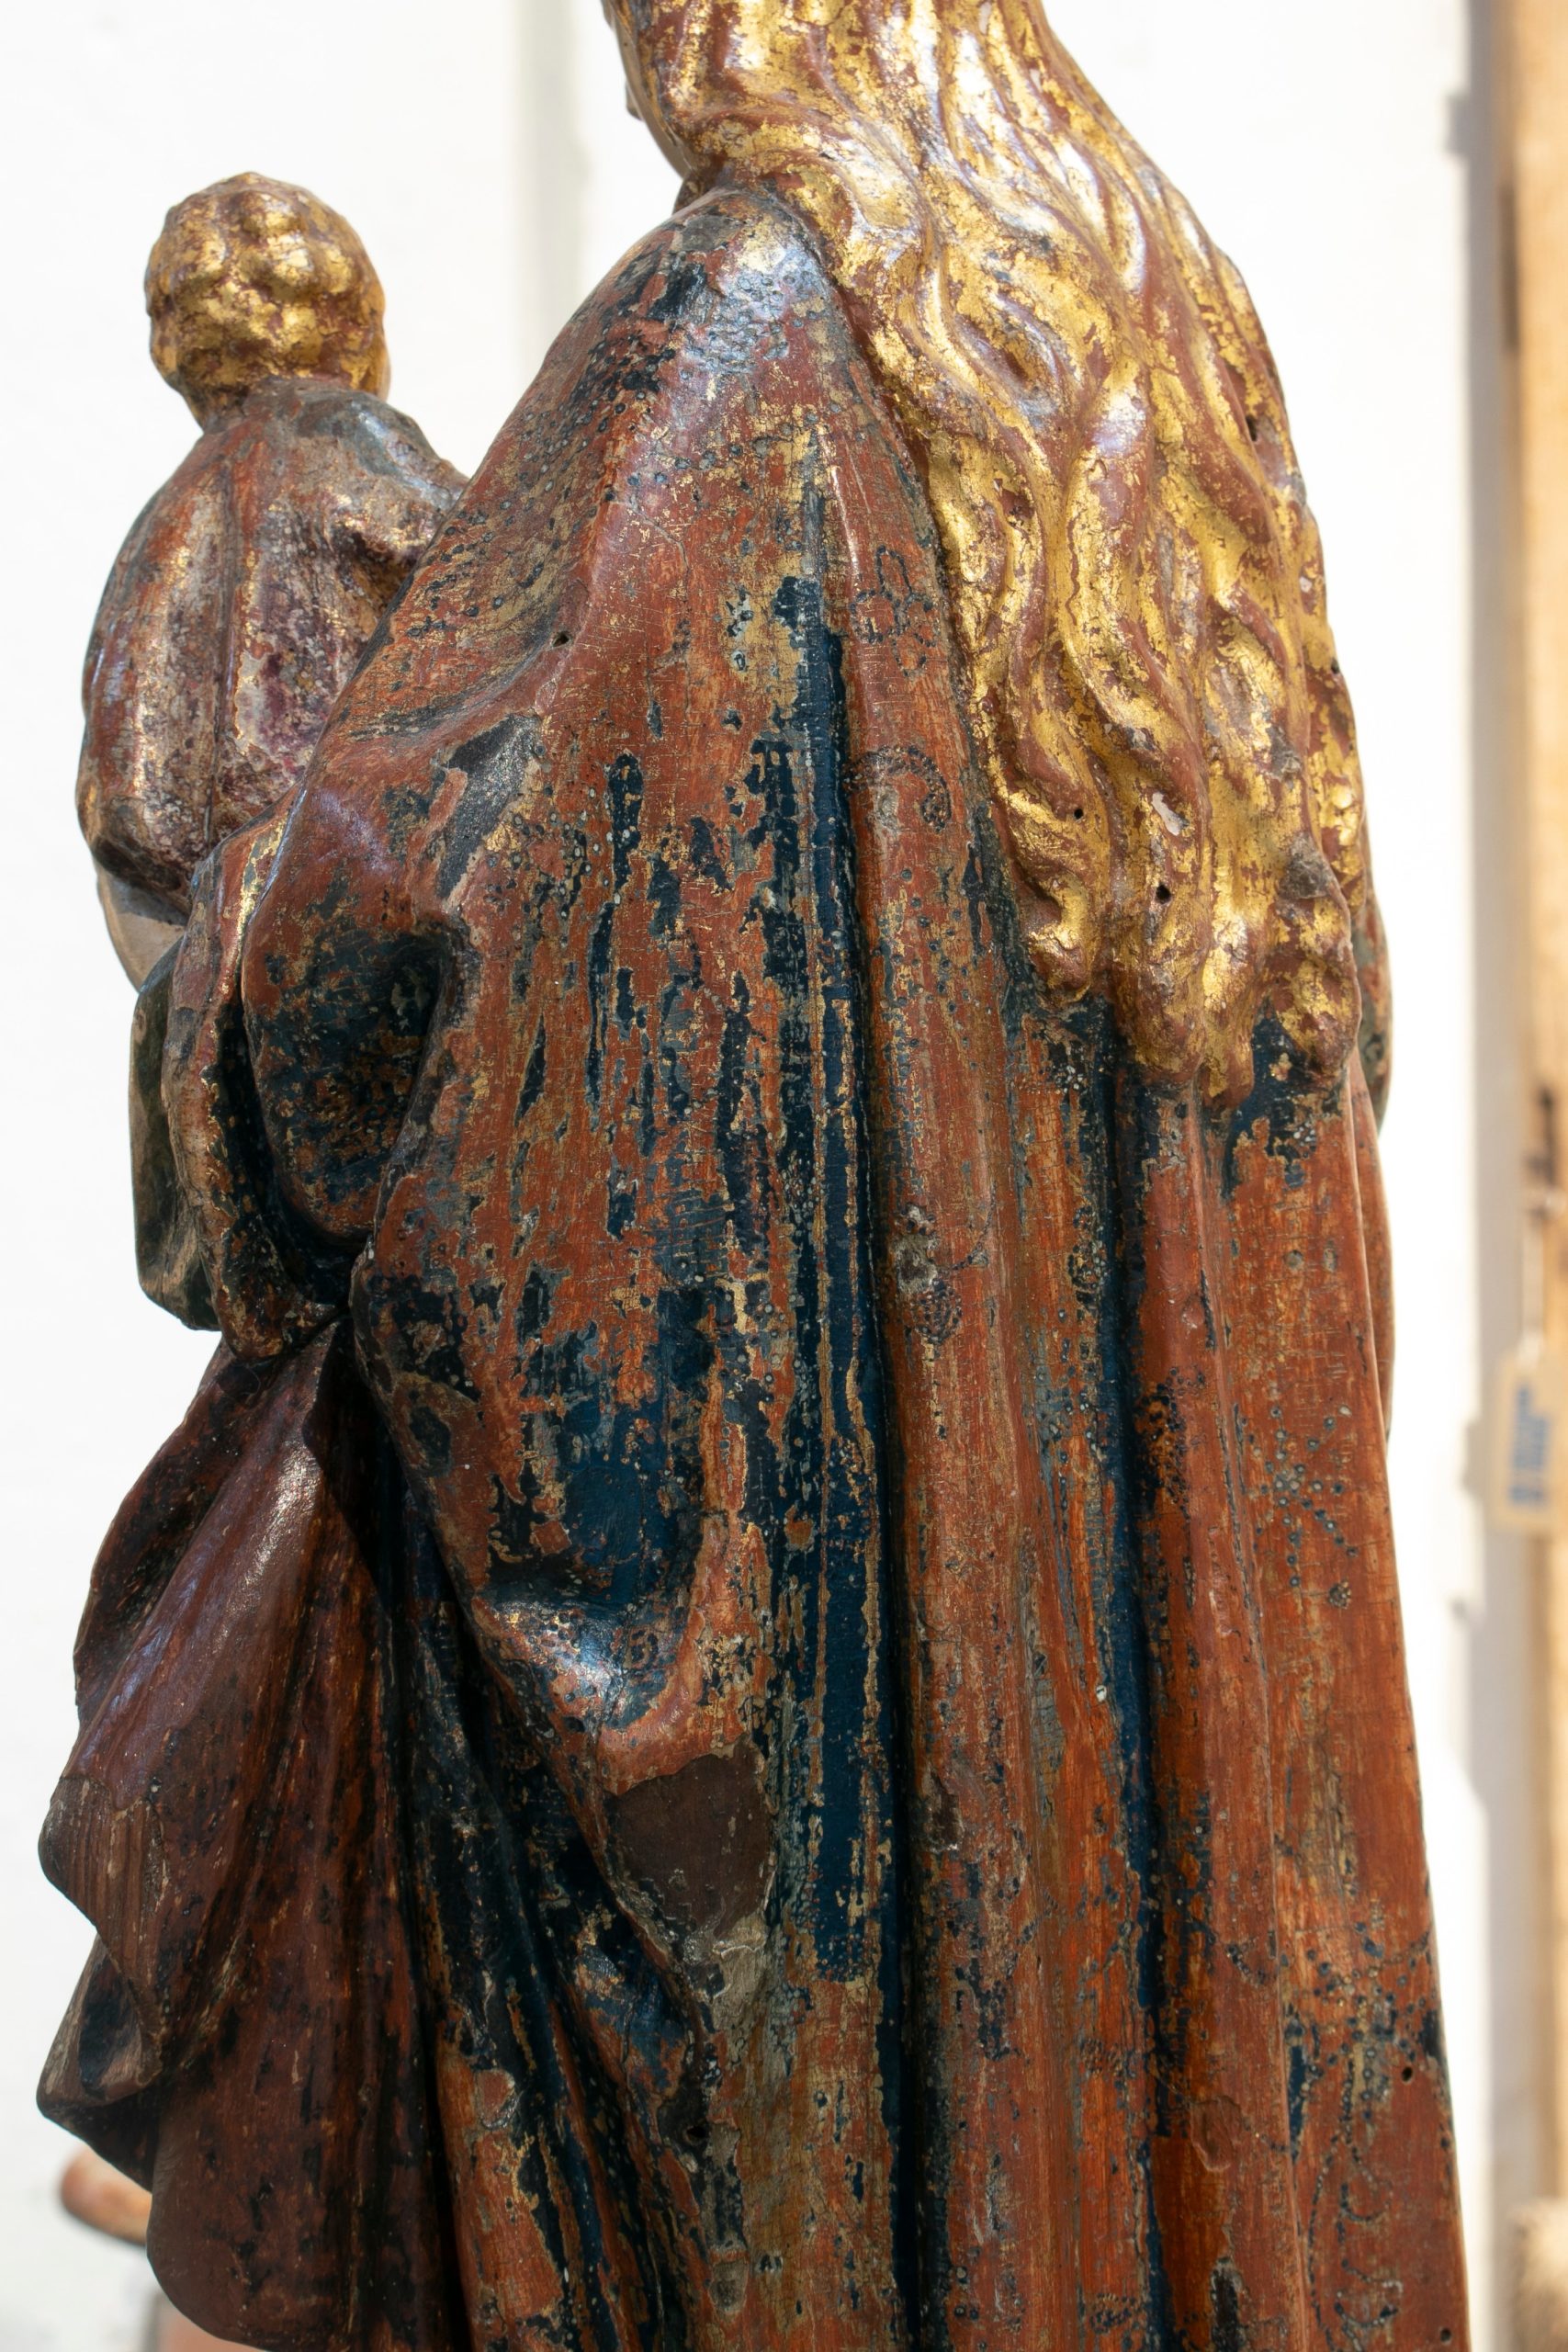 Escultura Religiosa Española de Madera Pintada de una Mujer con un Niño, España, del Siglo XVI